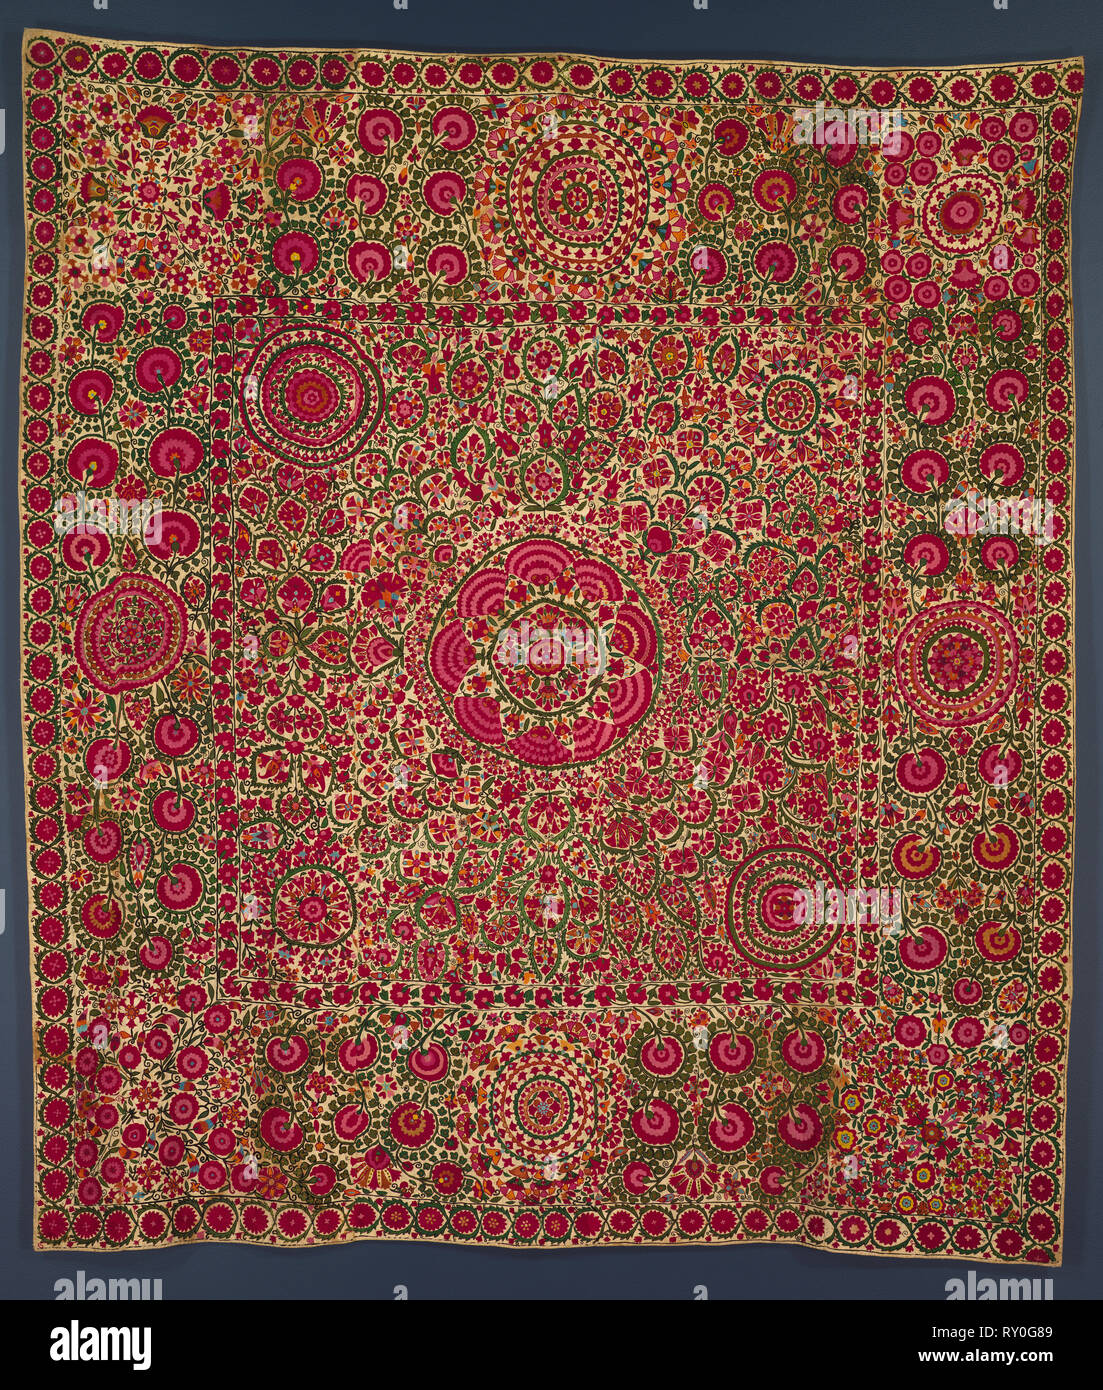 Couvre-lit ou rideau, début des années 1800. Le Tadjikistan, Ura Tube. Armure : coton ; broderies : soie ; moyenne : 216,5 x 188,6 cm (85 1/4 x 74 1/4 in Banque D'Images